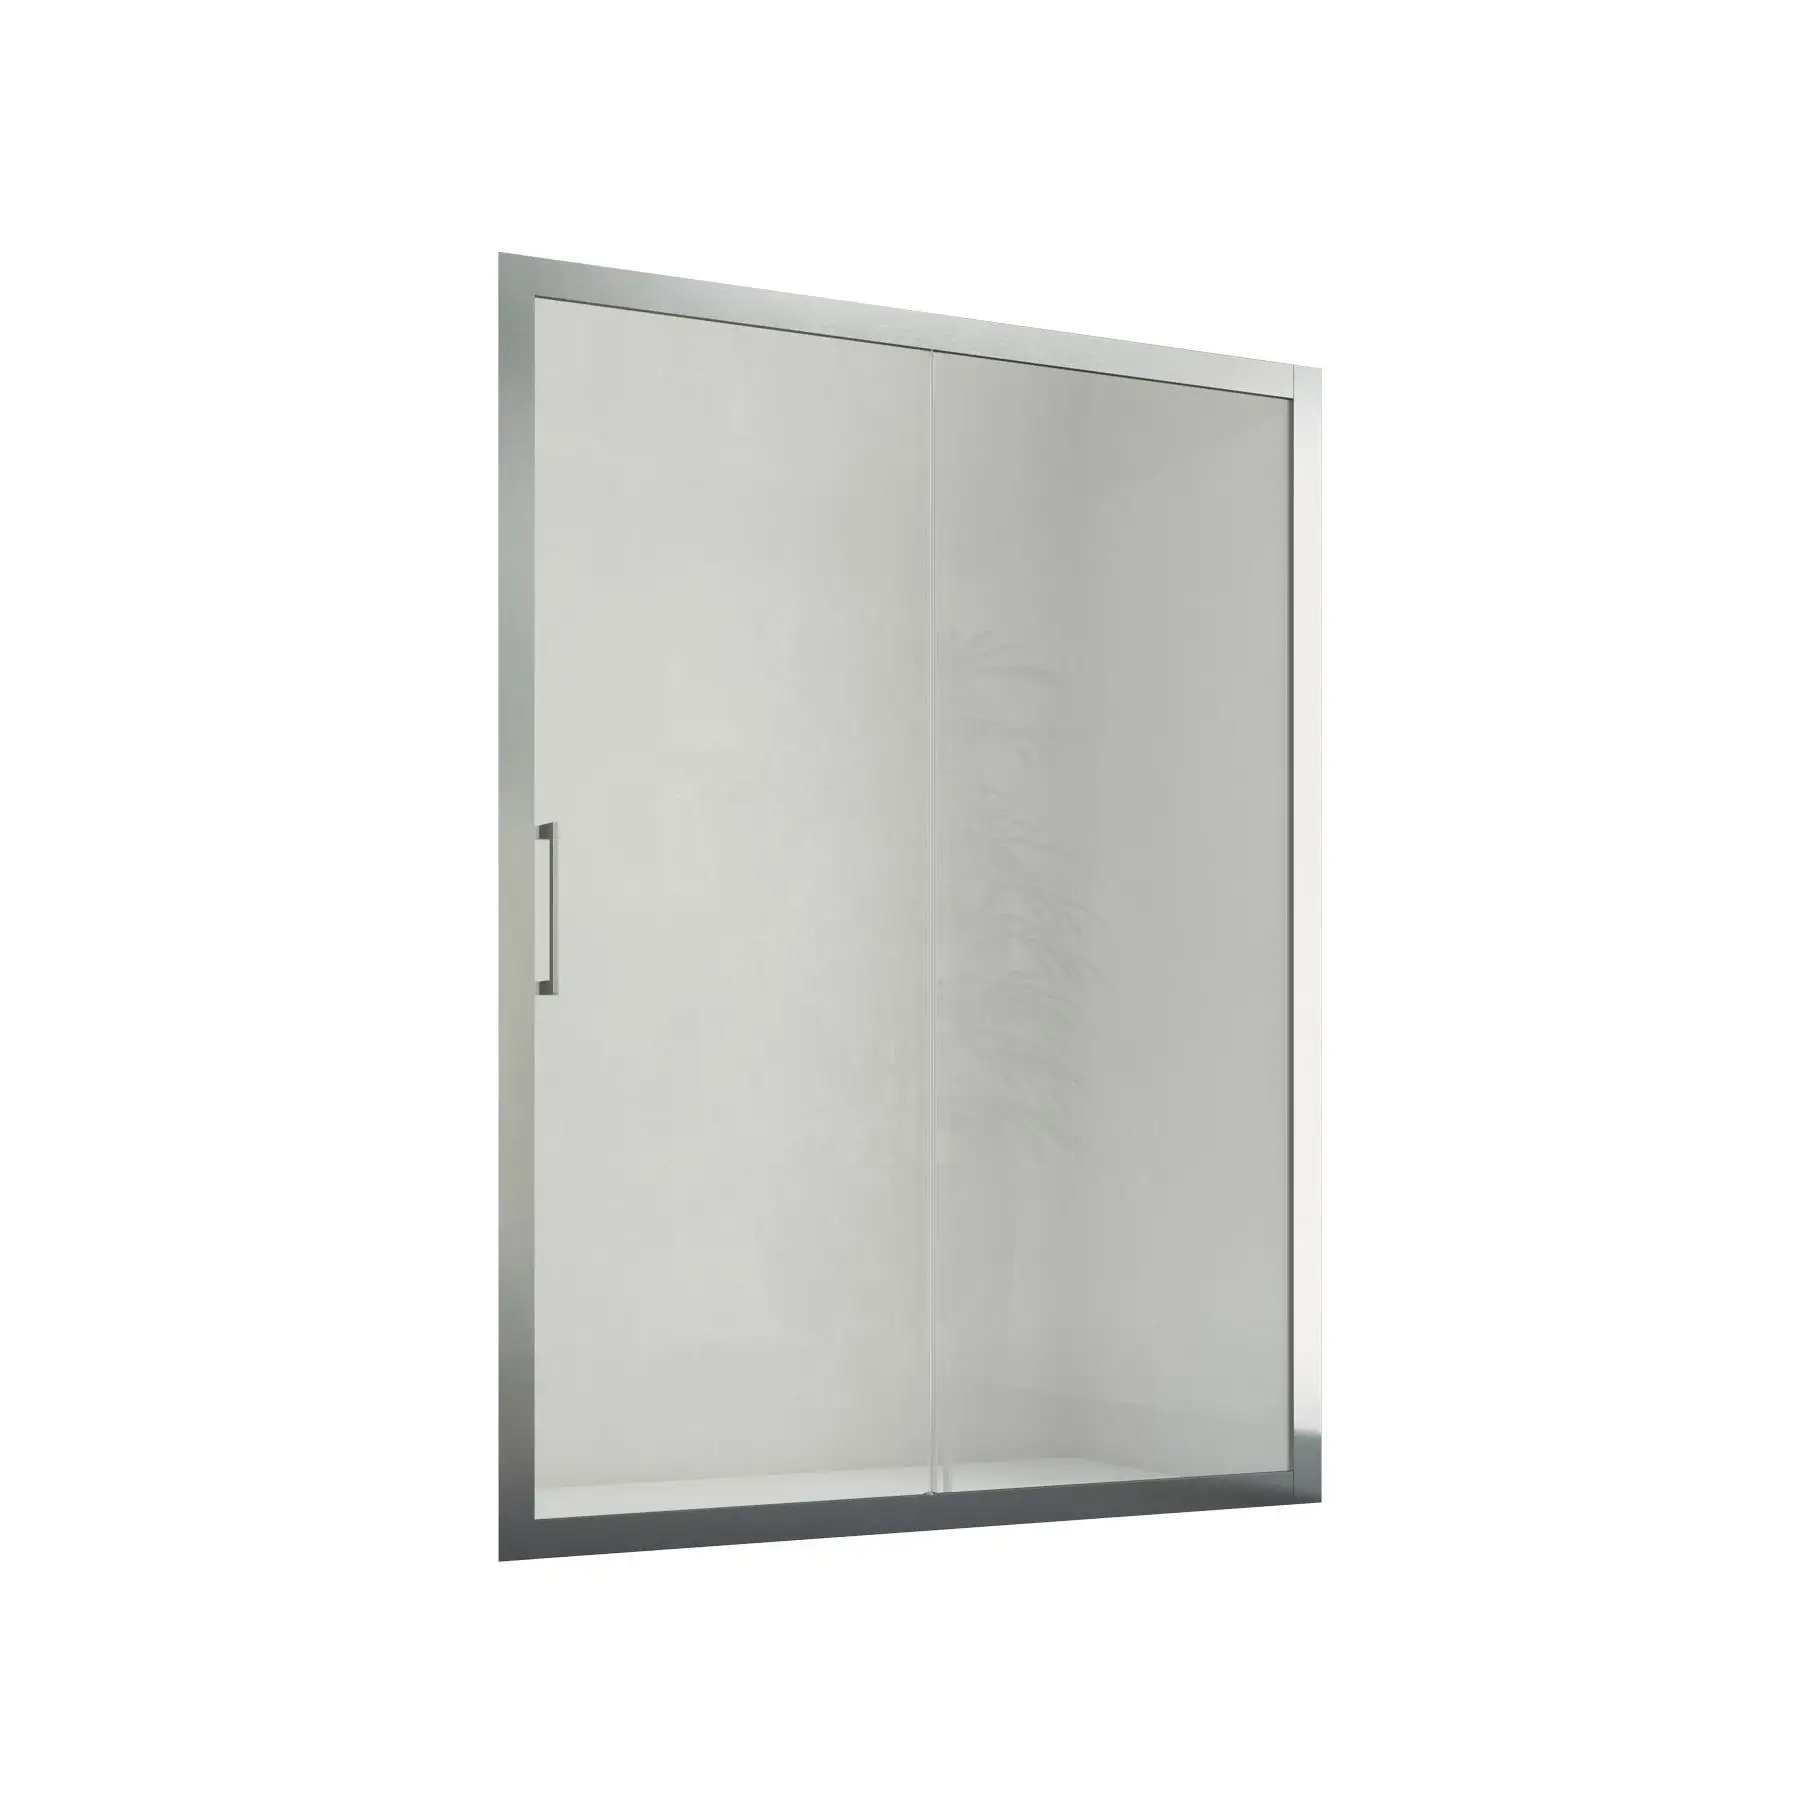 Oxi Slide N1FS cabina doccia nicchia-vetro 6mm-scorrevole laterale-148-156x200cm-porta scorrevole contemporanea